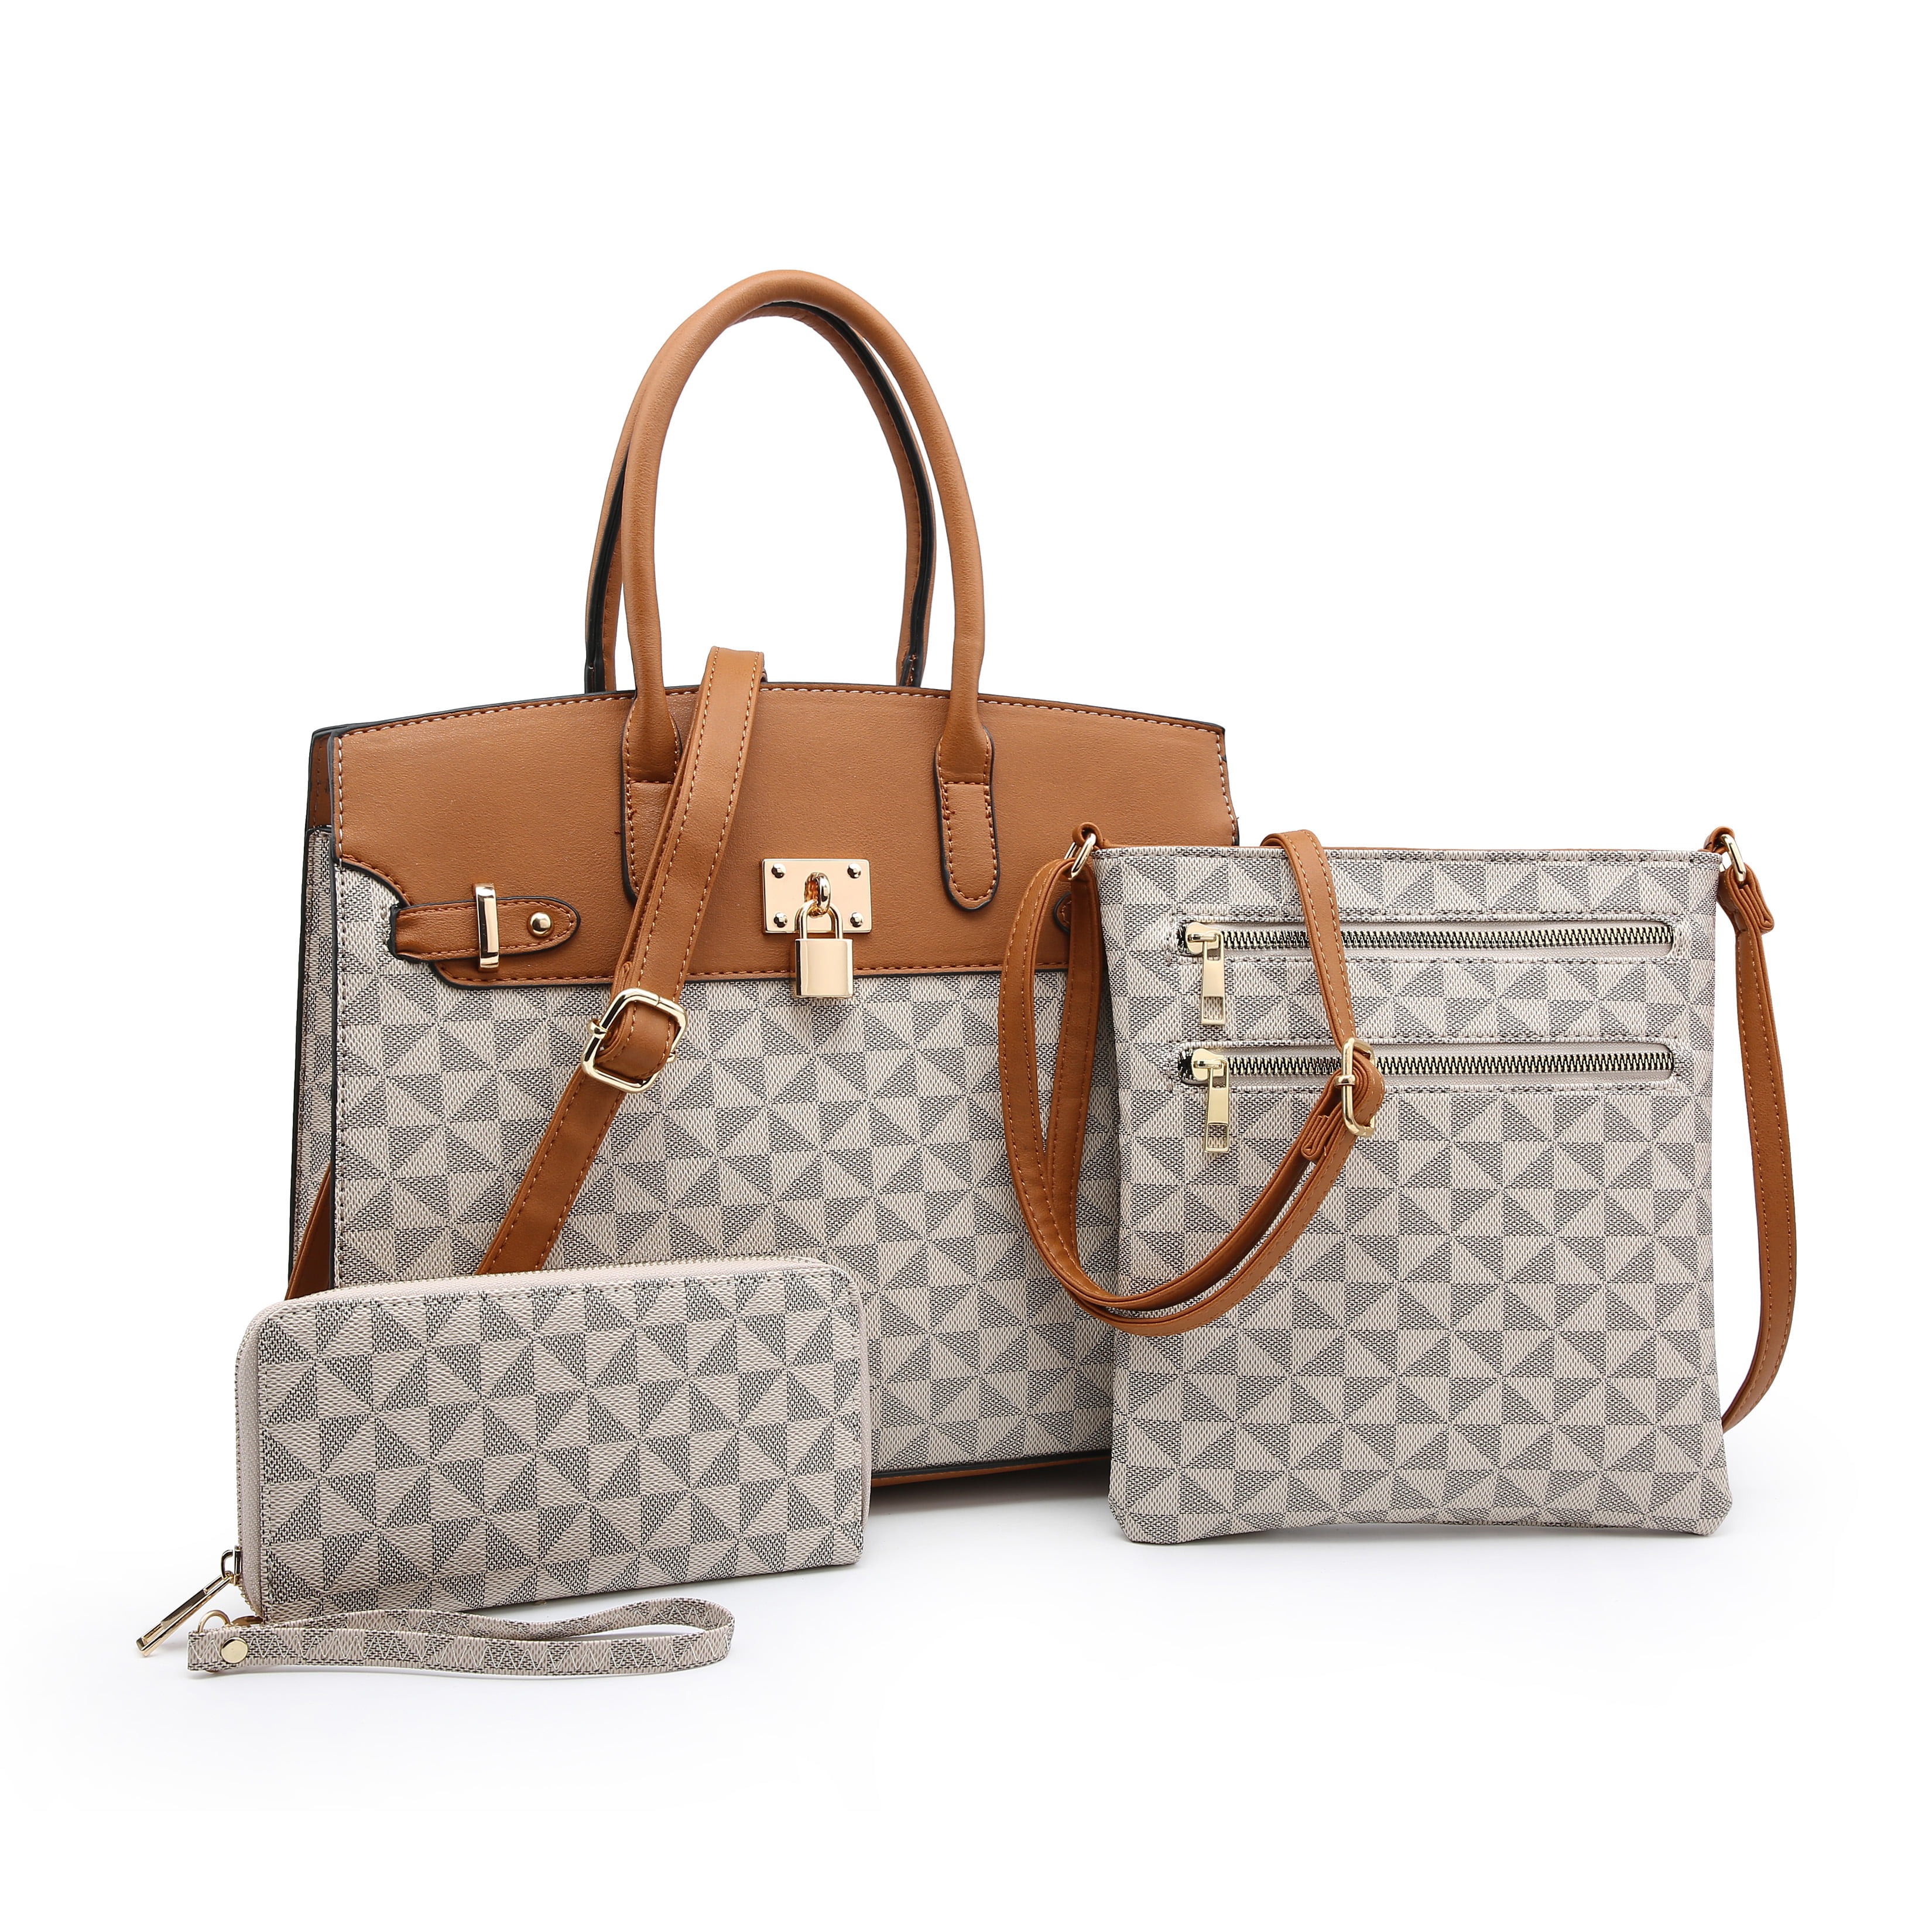 Ladies Leather Handbags - Leather Ladies Handbags 